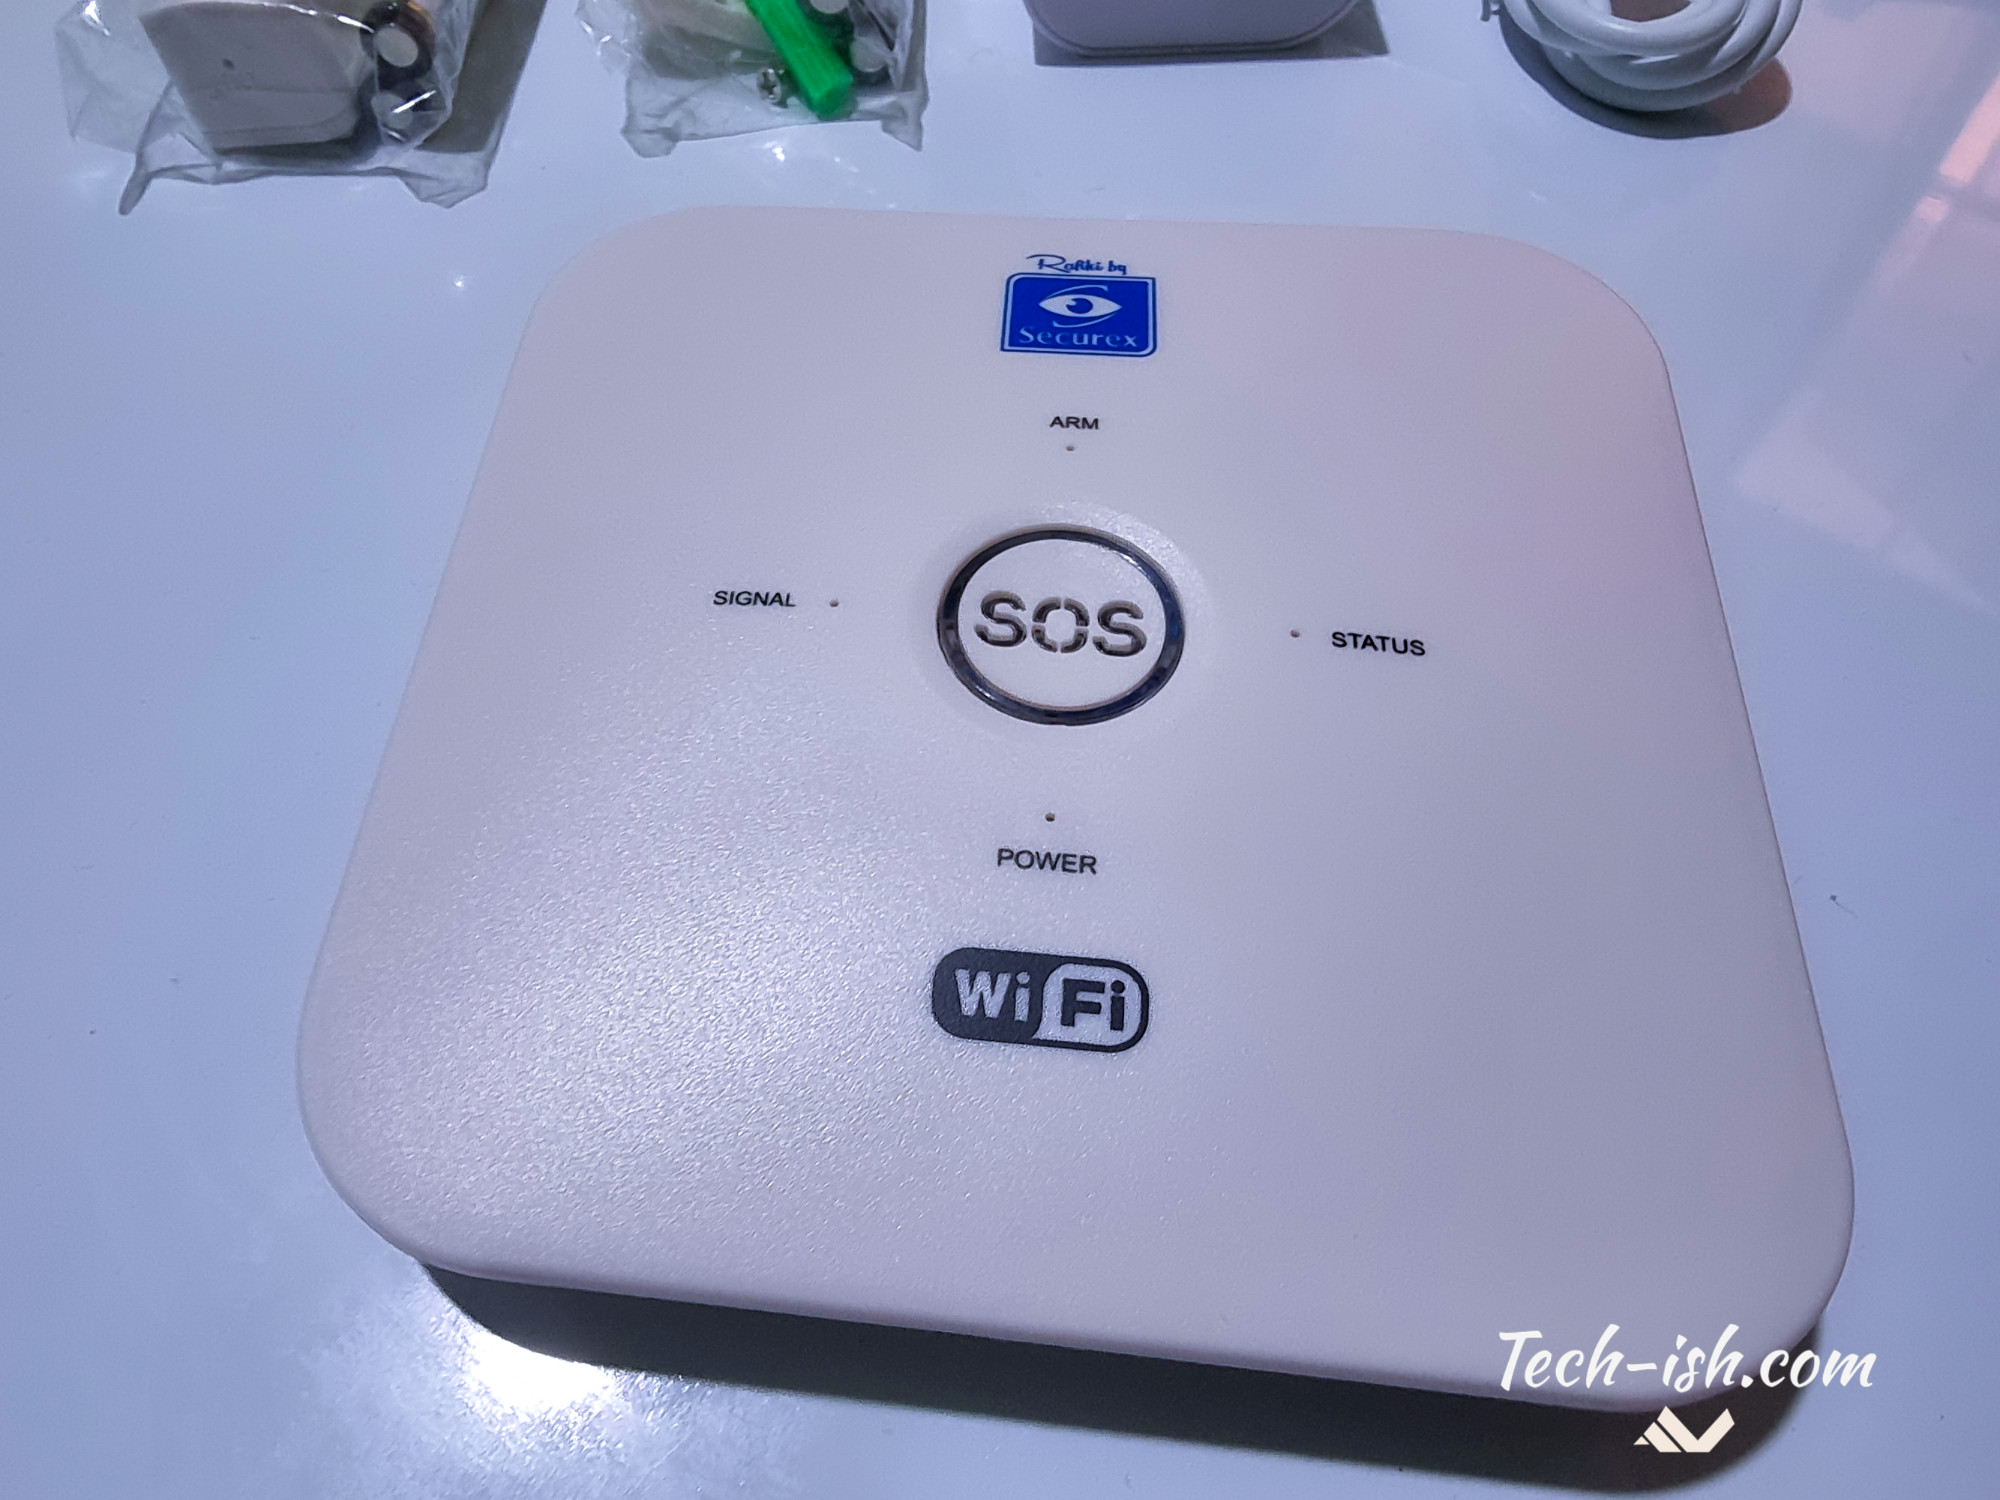 The Base Station WiFi Alarm Rafiki by Securex